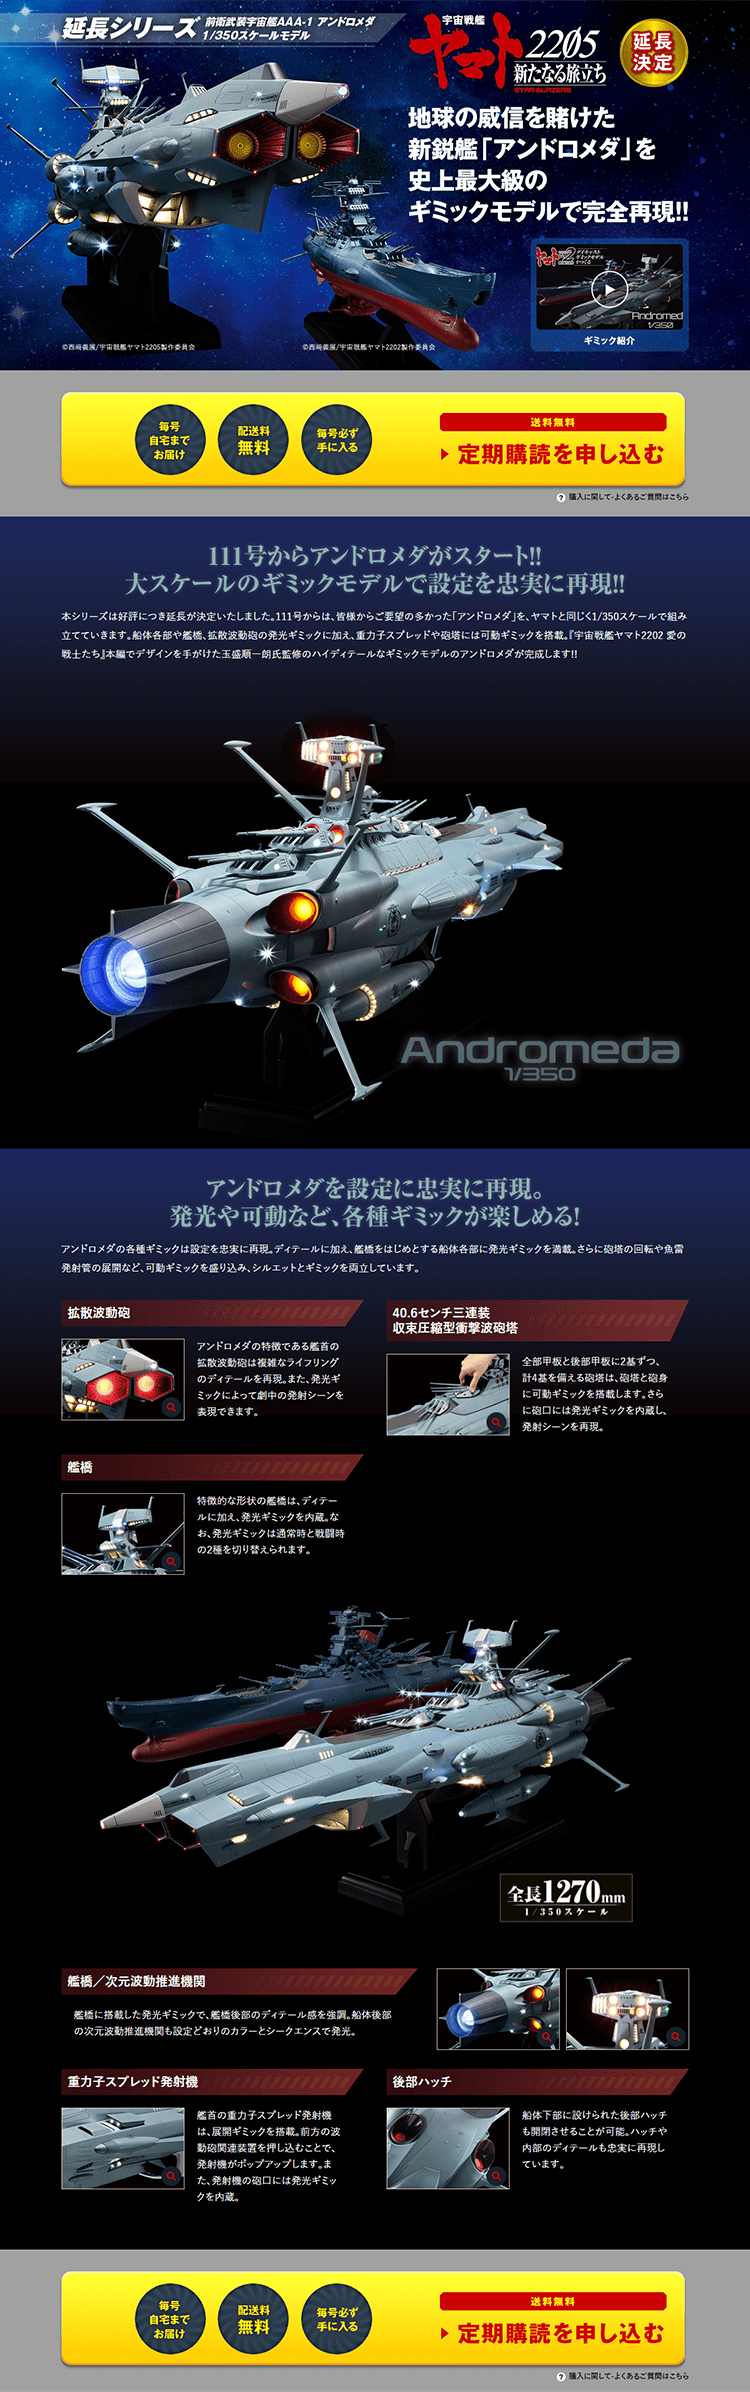 宇宙戦艦ヤマト ダイキャストギミックモデルをつくる_pc_1